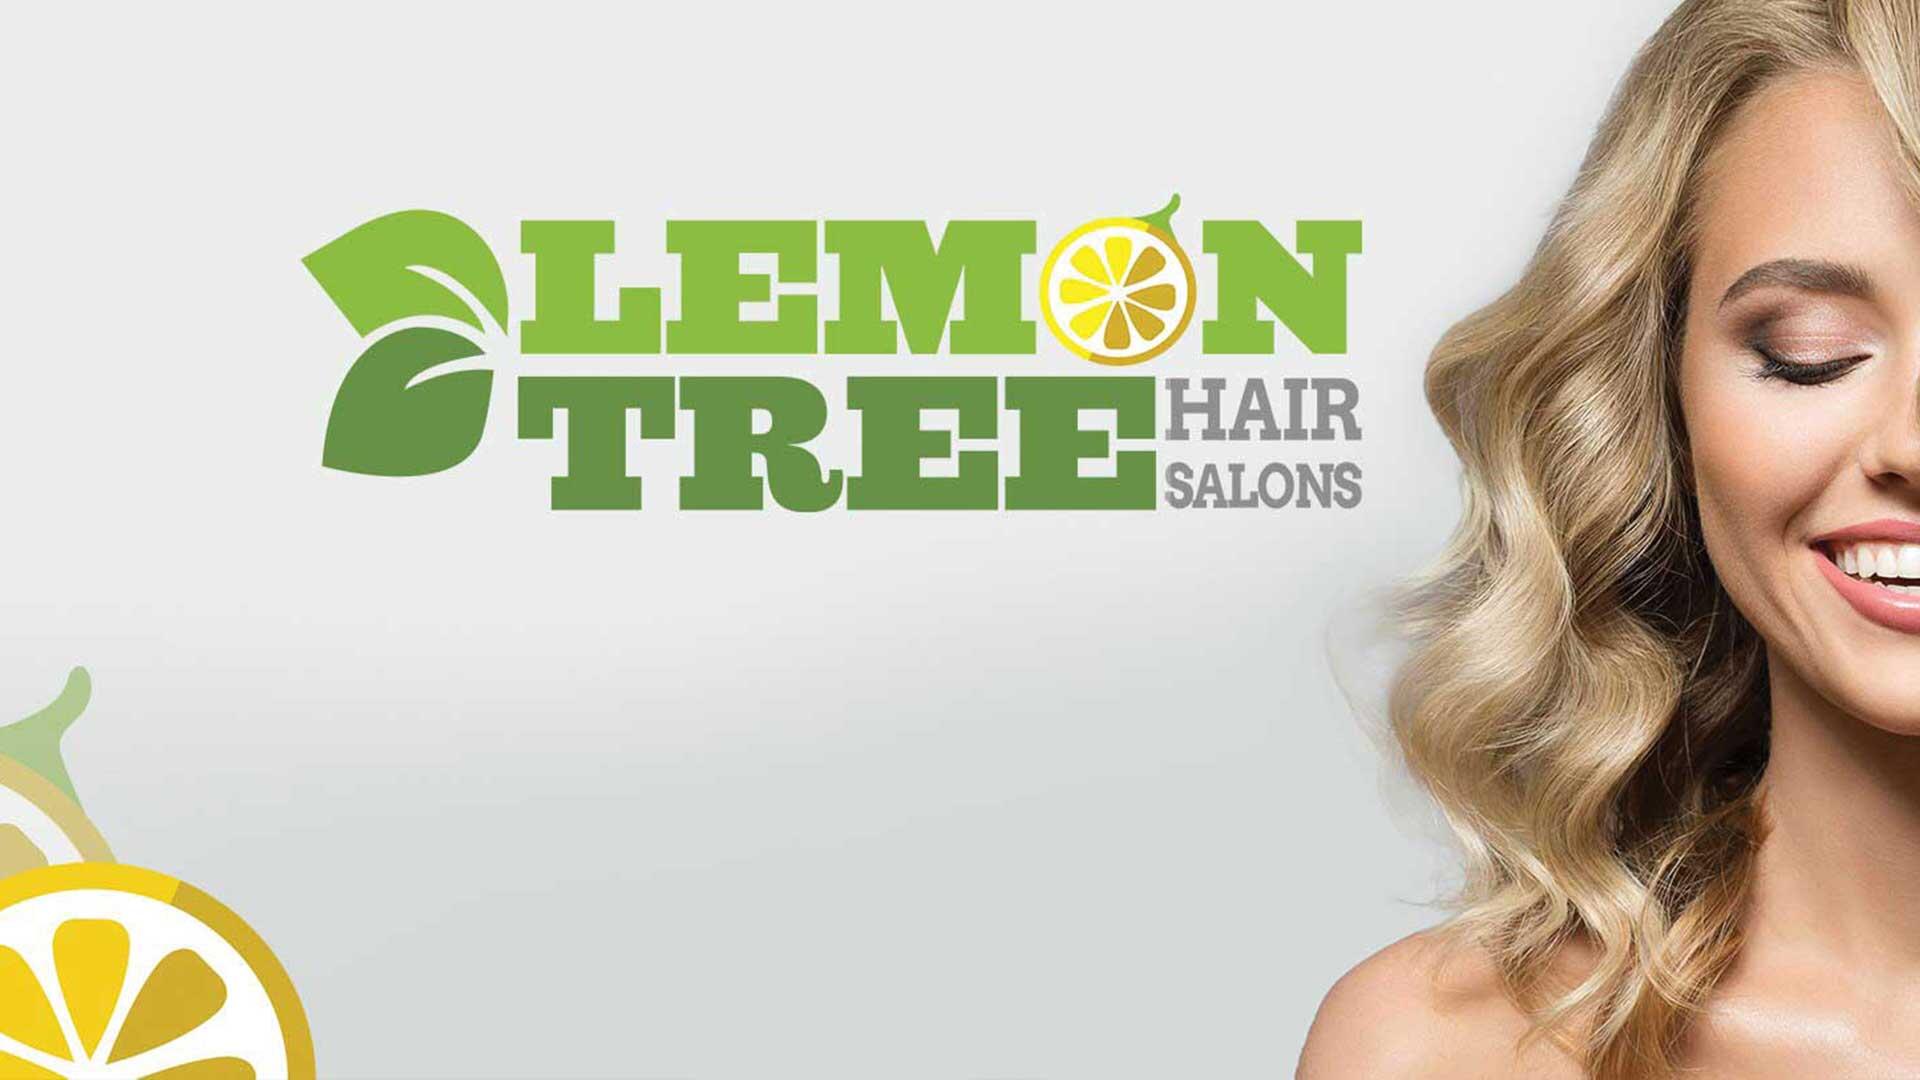 Cheap Haircut in Islip. Lemon Tree Hair Salon.